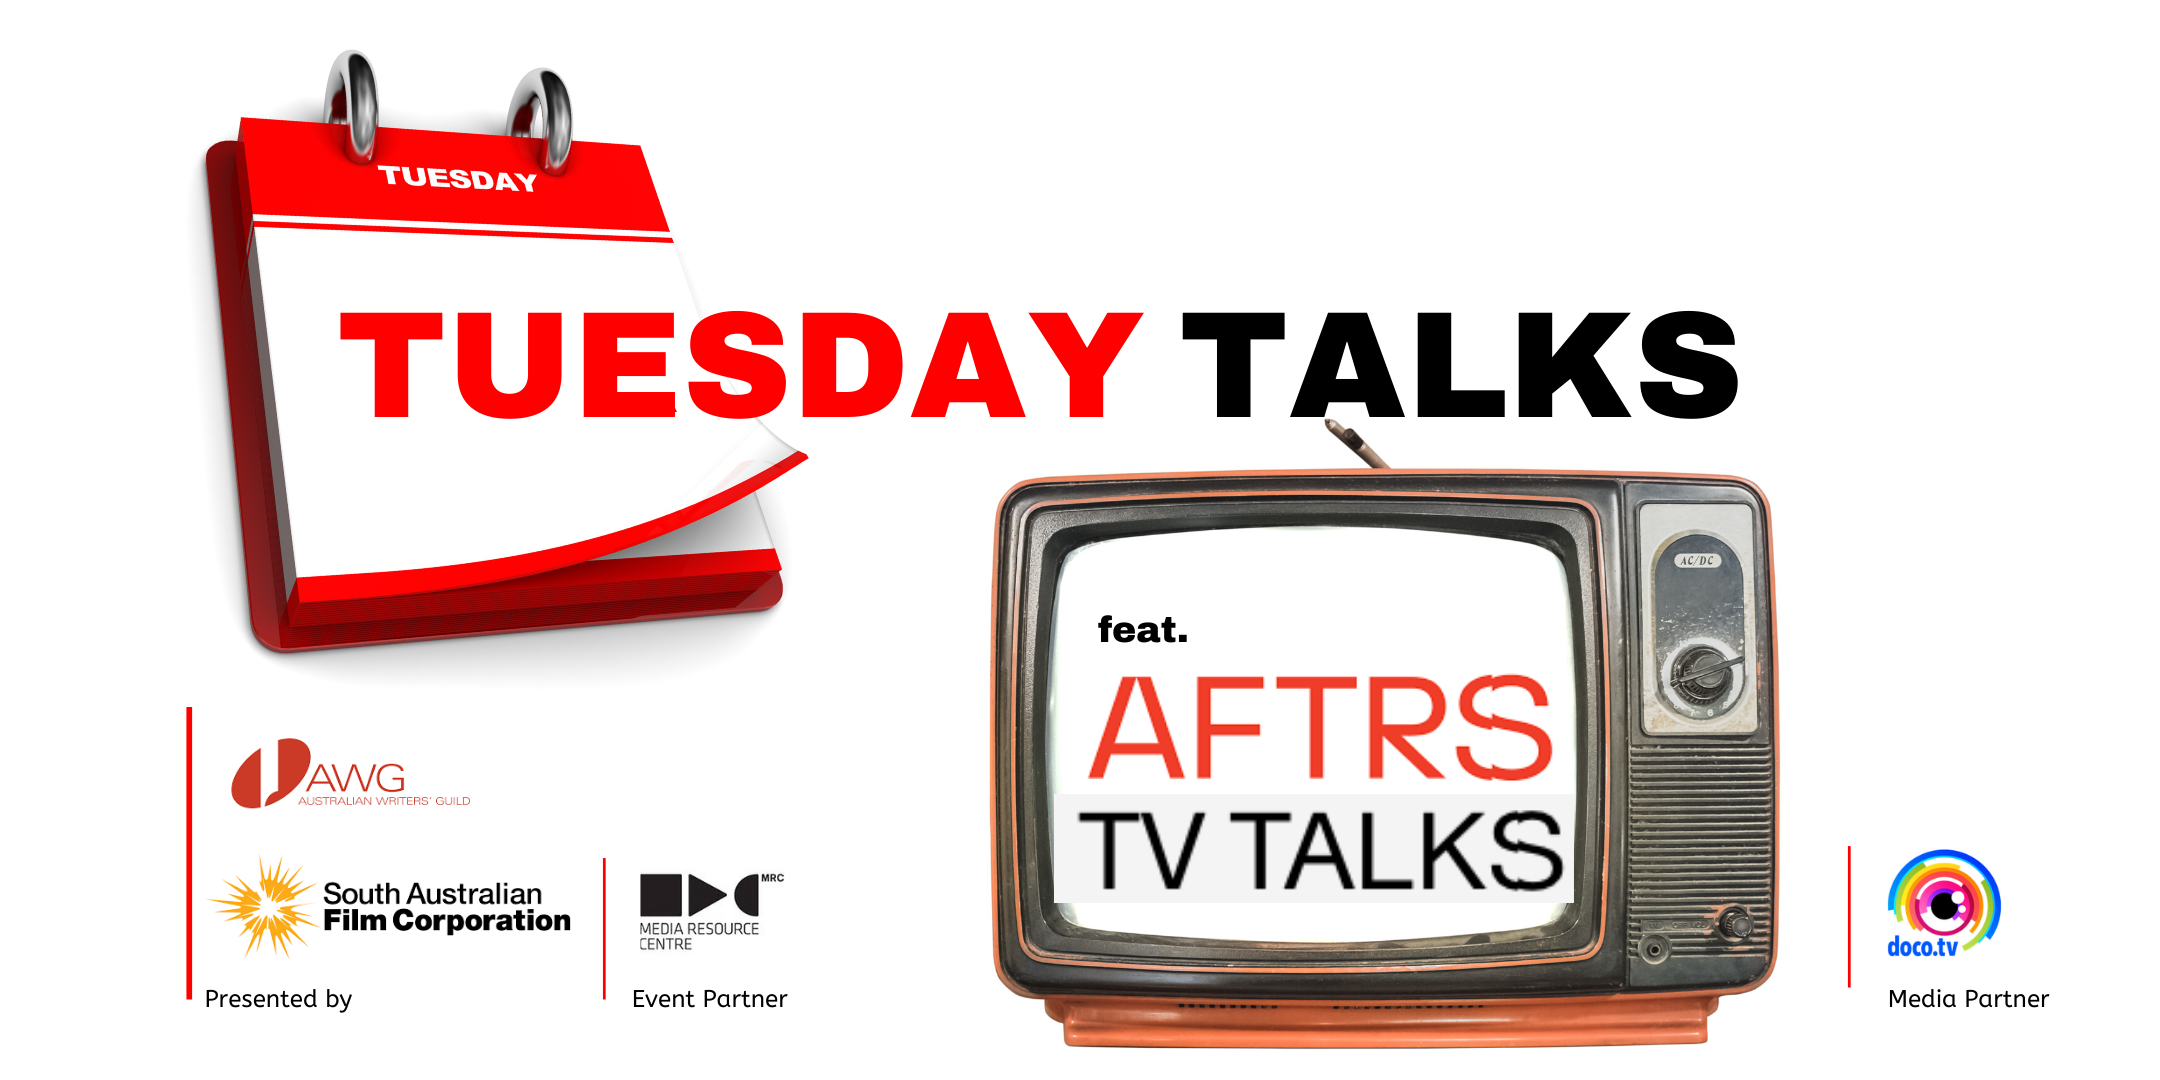 TUESDAY TALKS featuring TV Talks